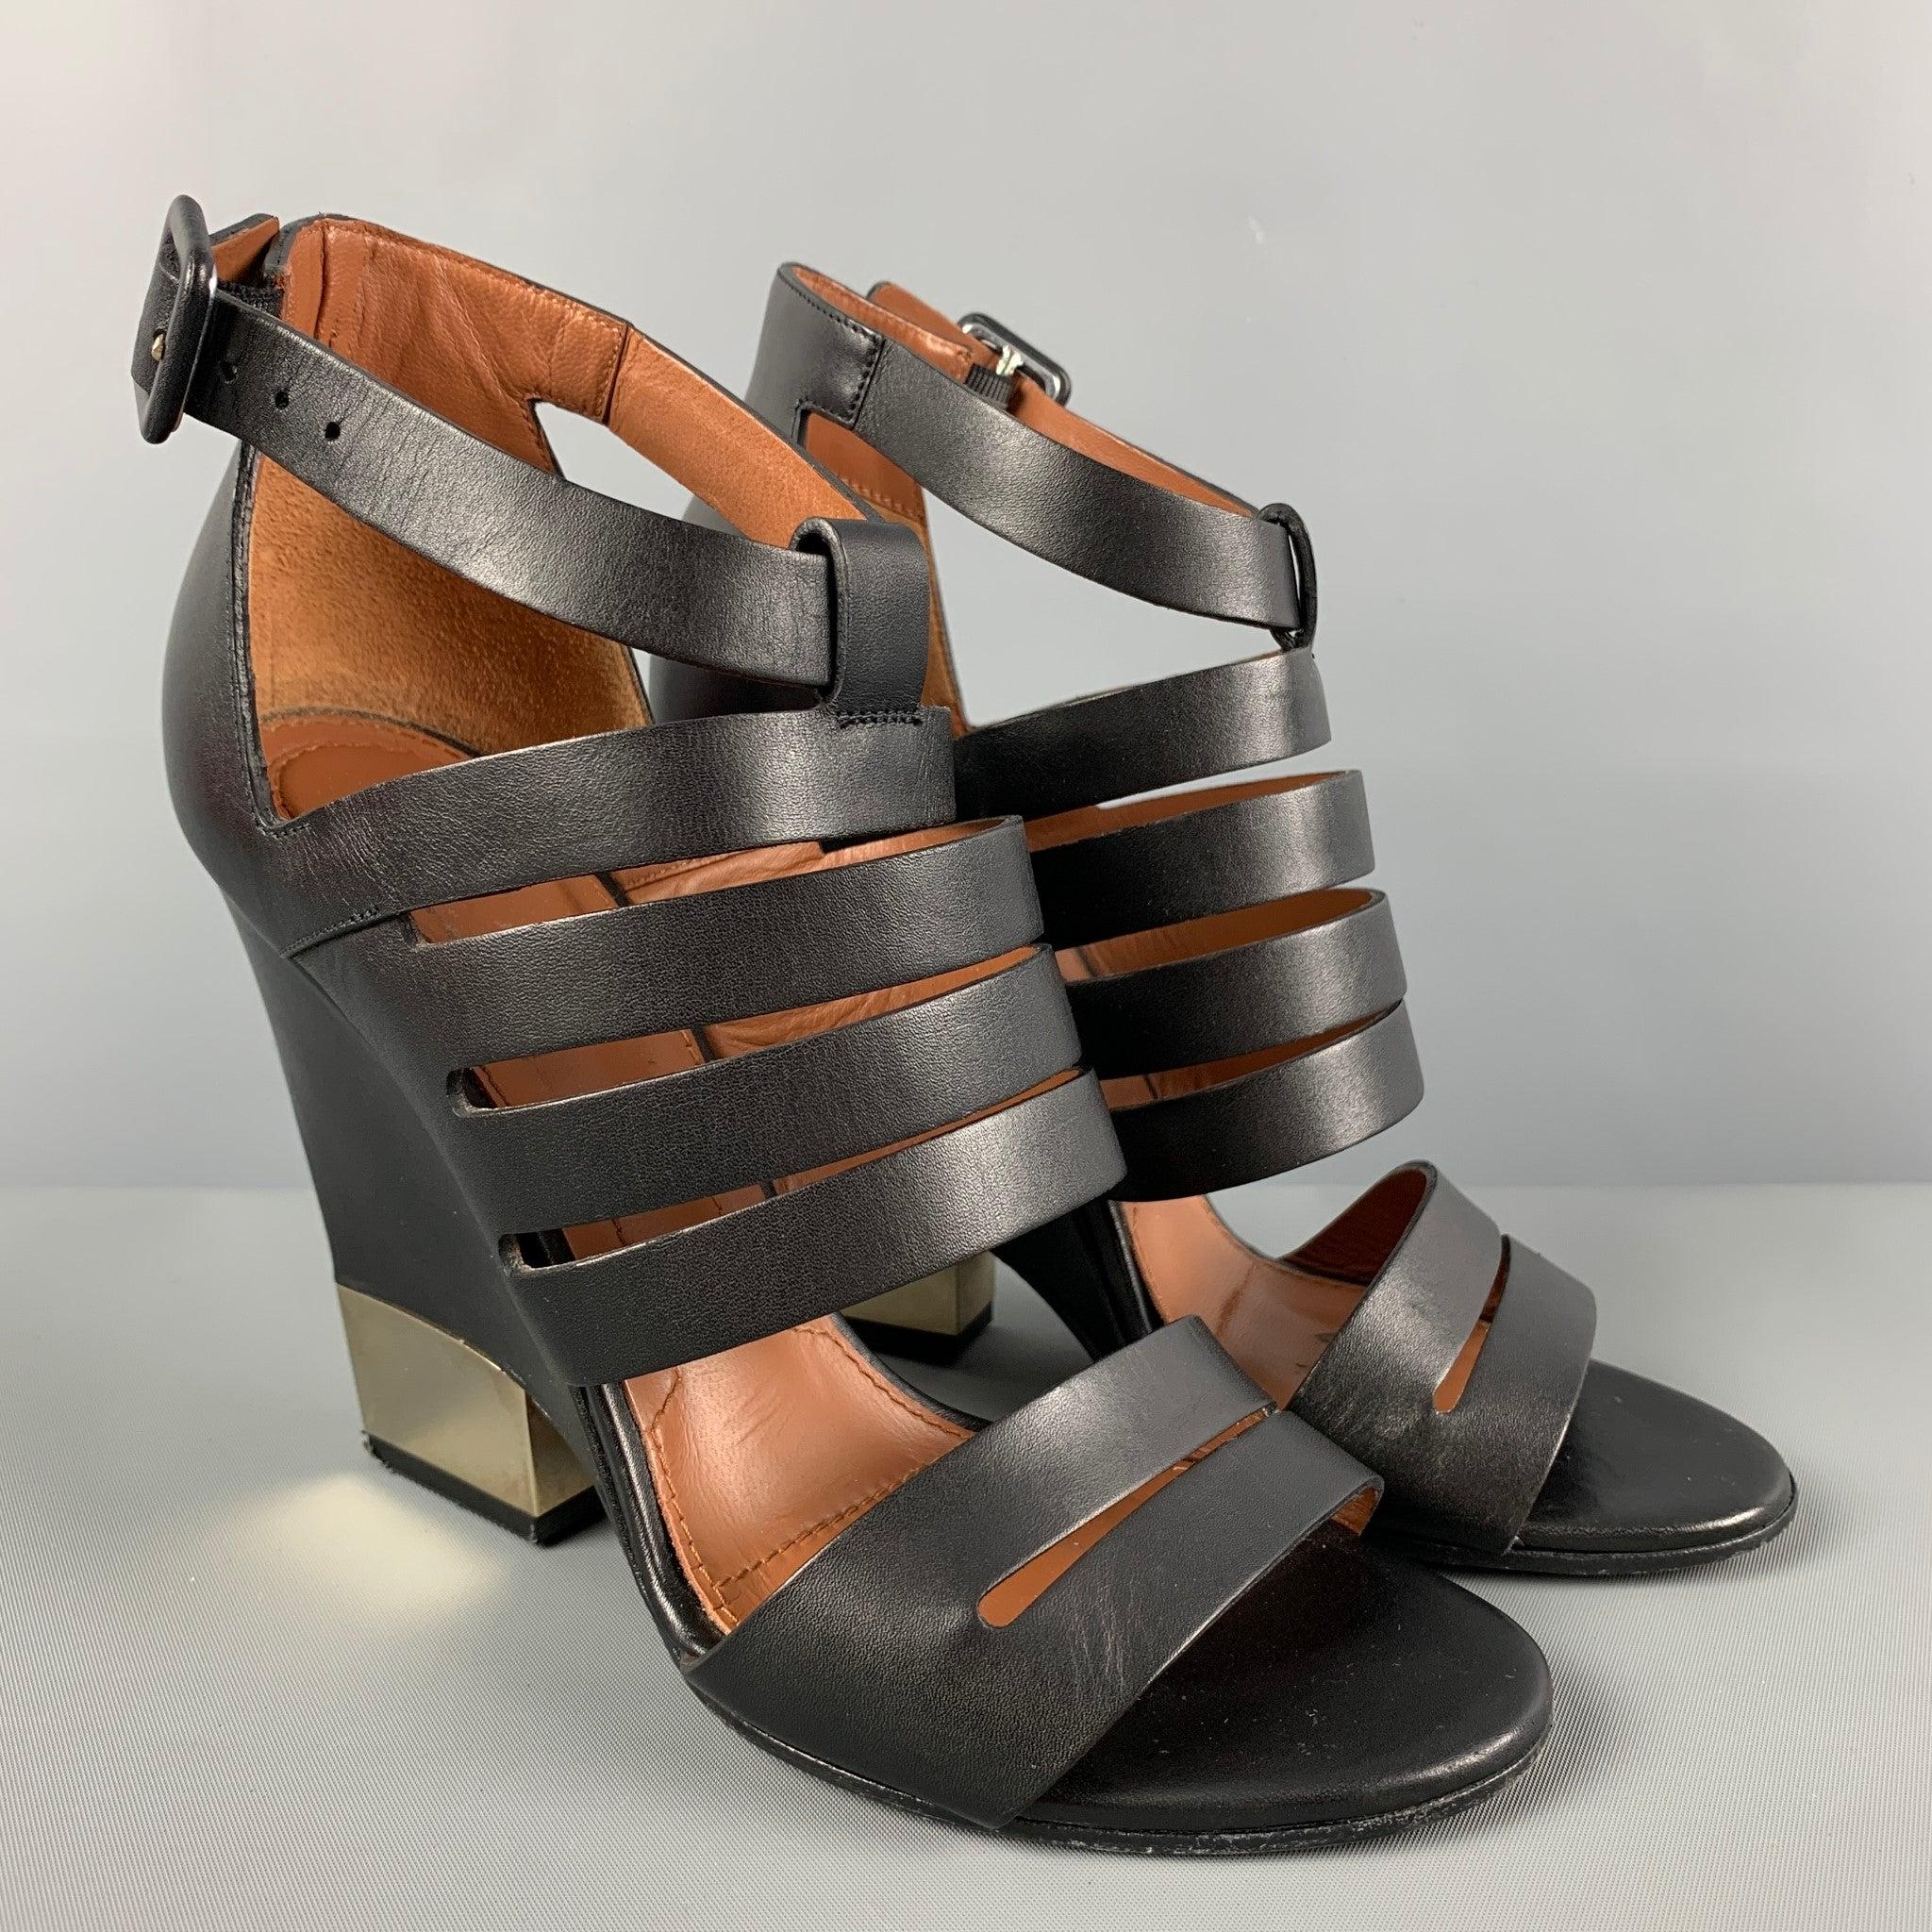 Les chaussures à talons Givenchy sont en cuir noir et présentent un bout ouvert, une bride à la cheville et un talon compensé en métal.
Bon état d'origine.
Légère usure. En l'état.  

Marqué :   36.5 

Mesures : 
  Talon :
4 pouces 
  
  
